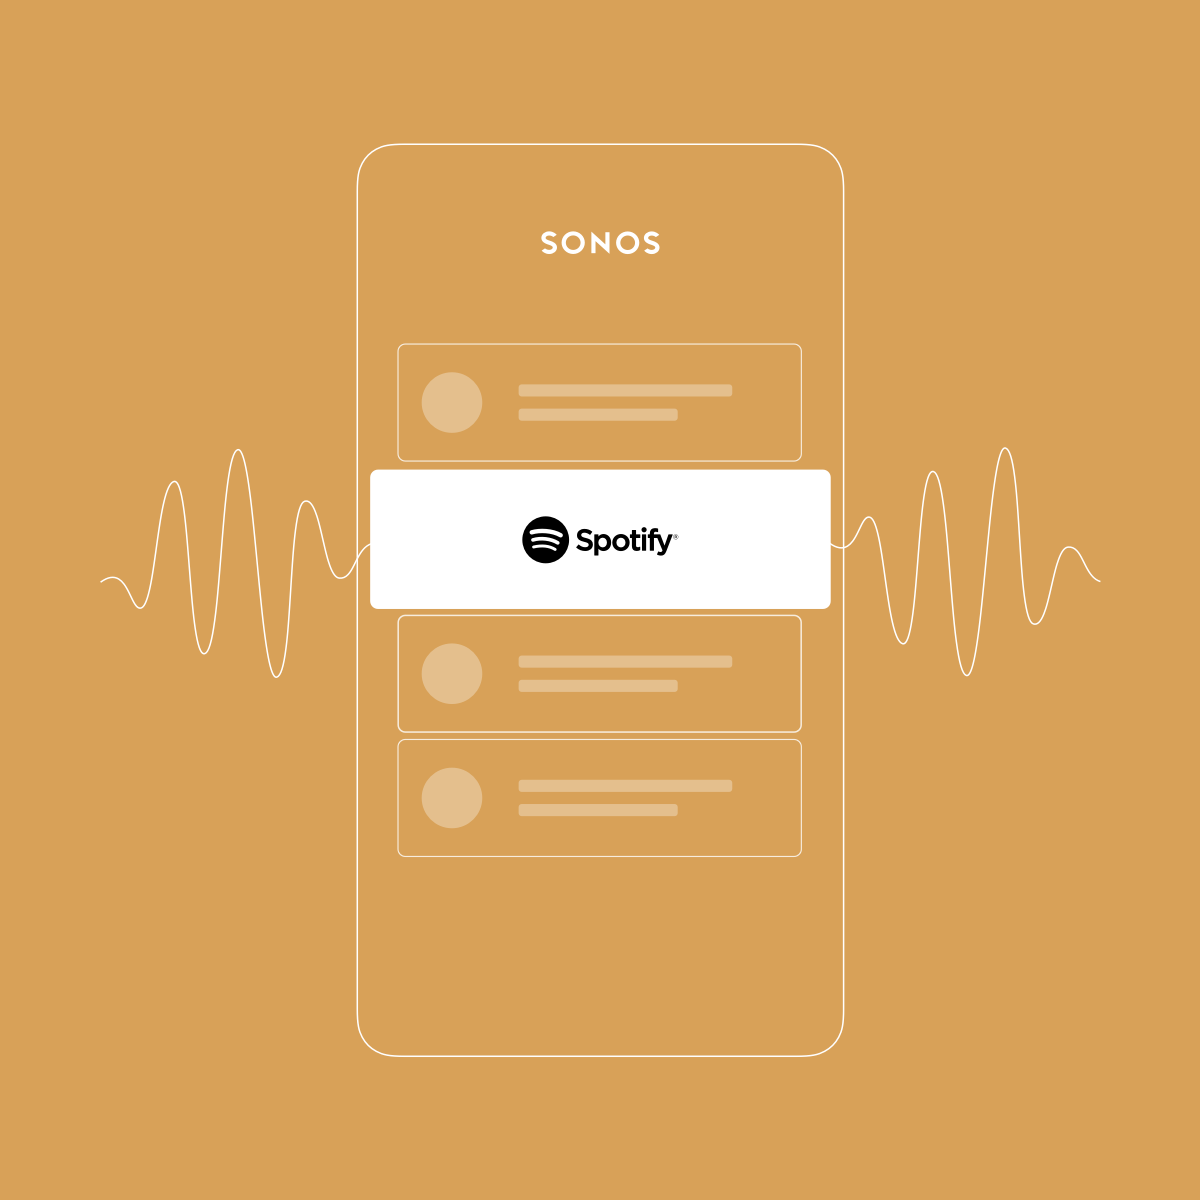 Spotify_Sonos